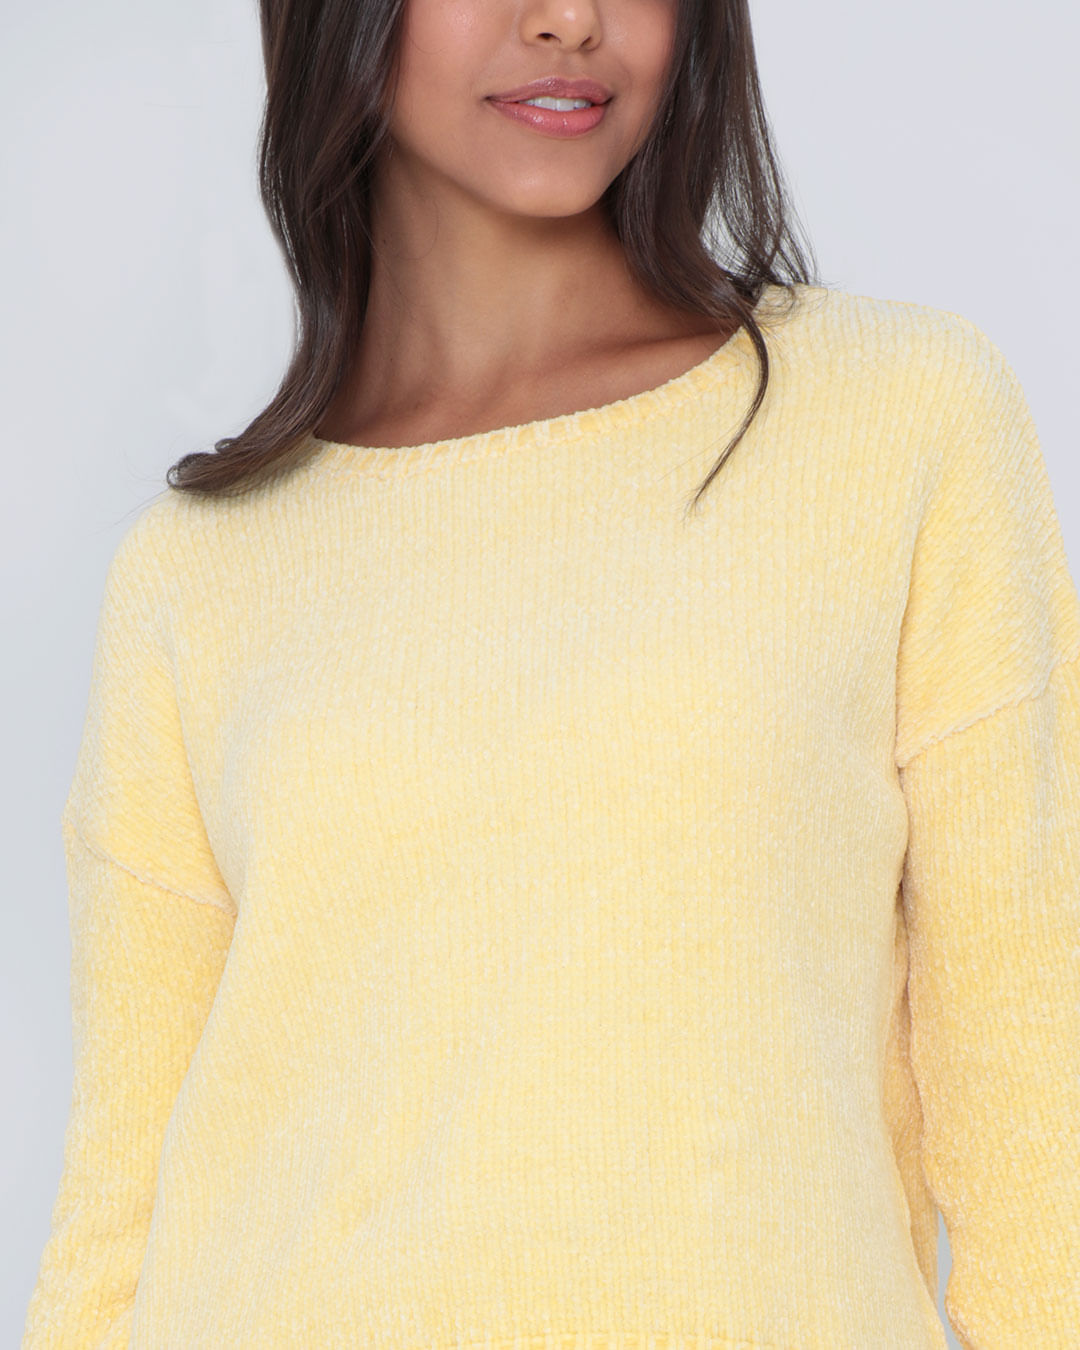 Tricot-Chenille-Sweaterjf-201-Faz---Amarelo-Medio